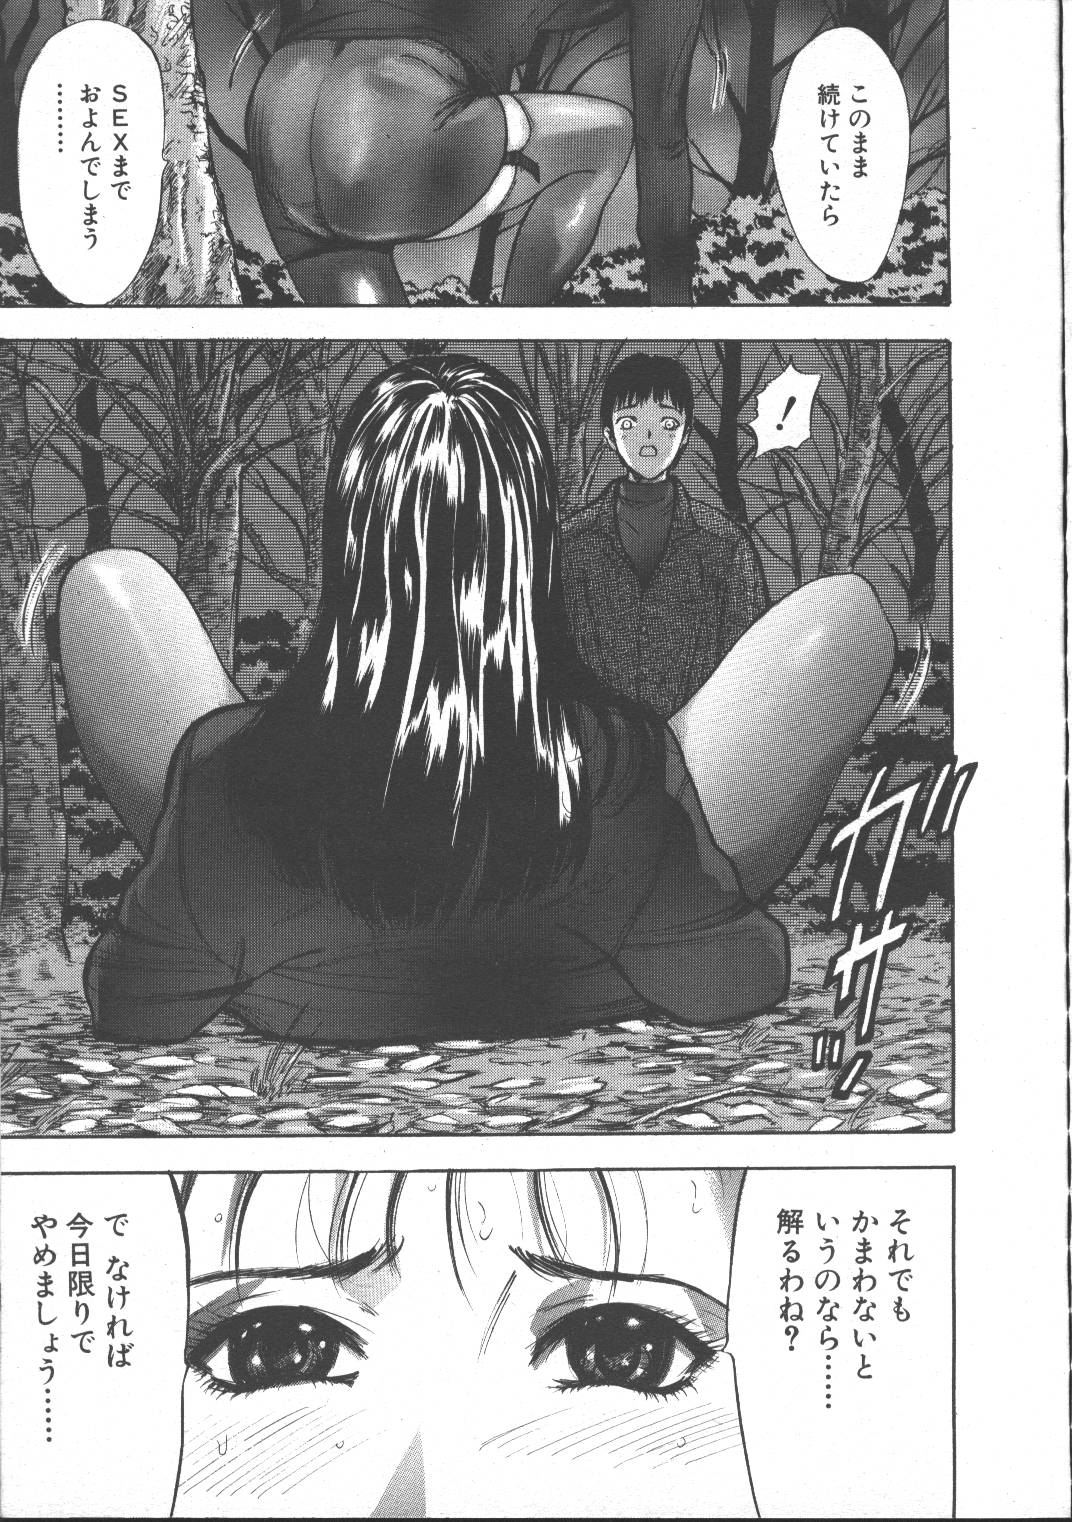 Comic Mujin 1999-11 page 23 full